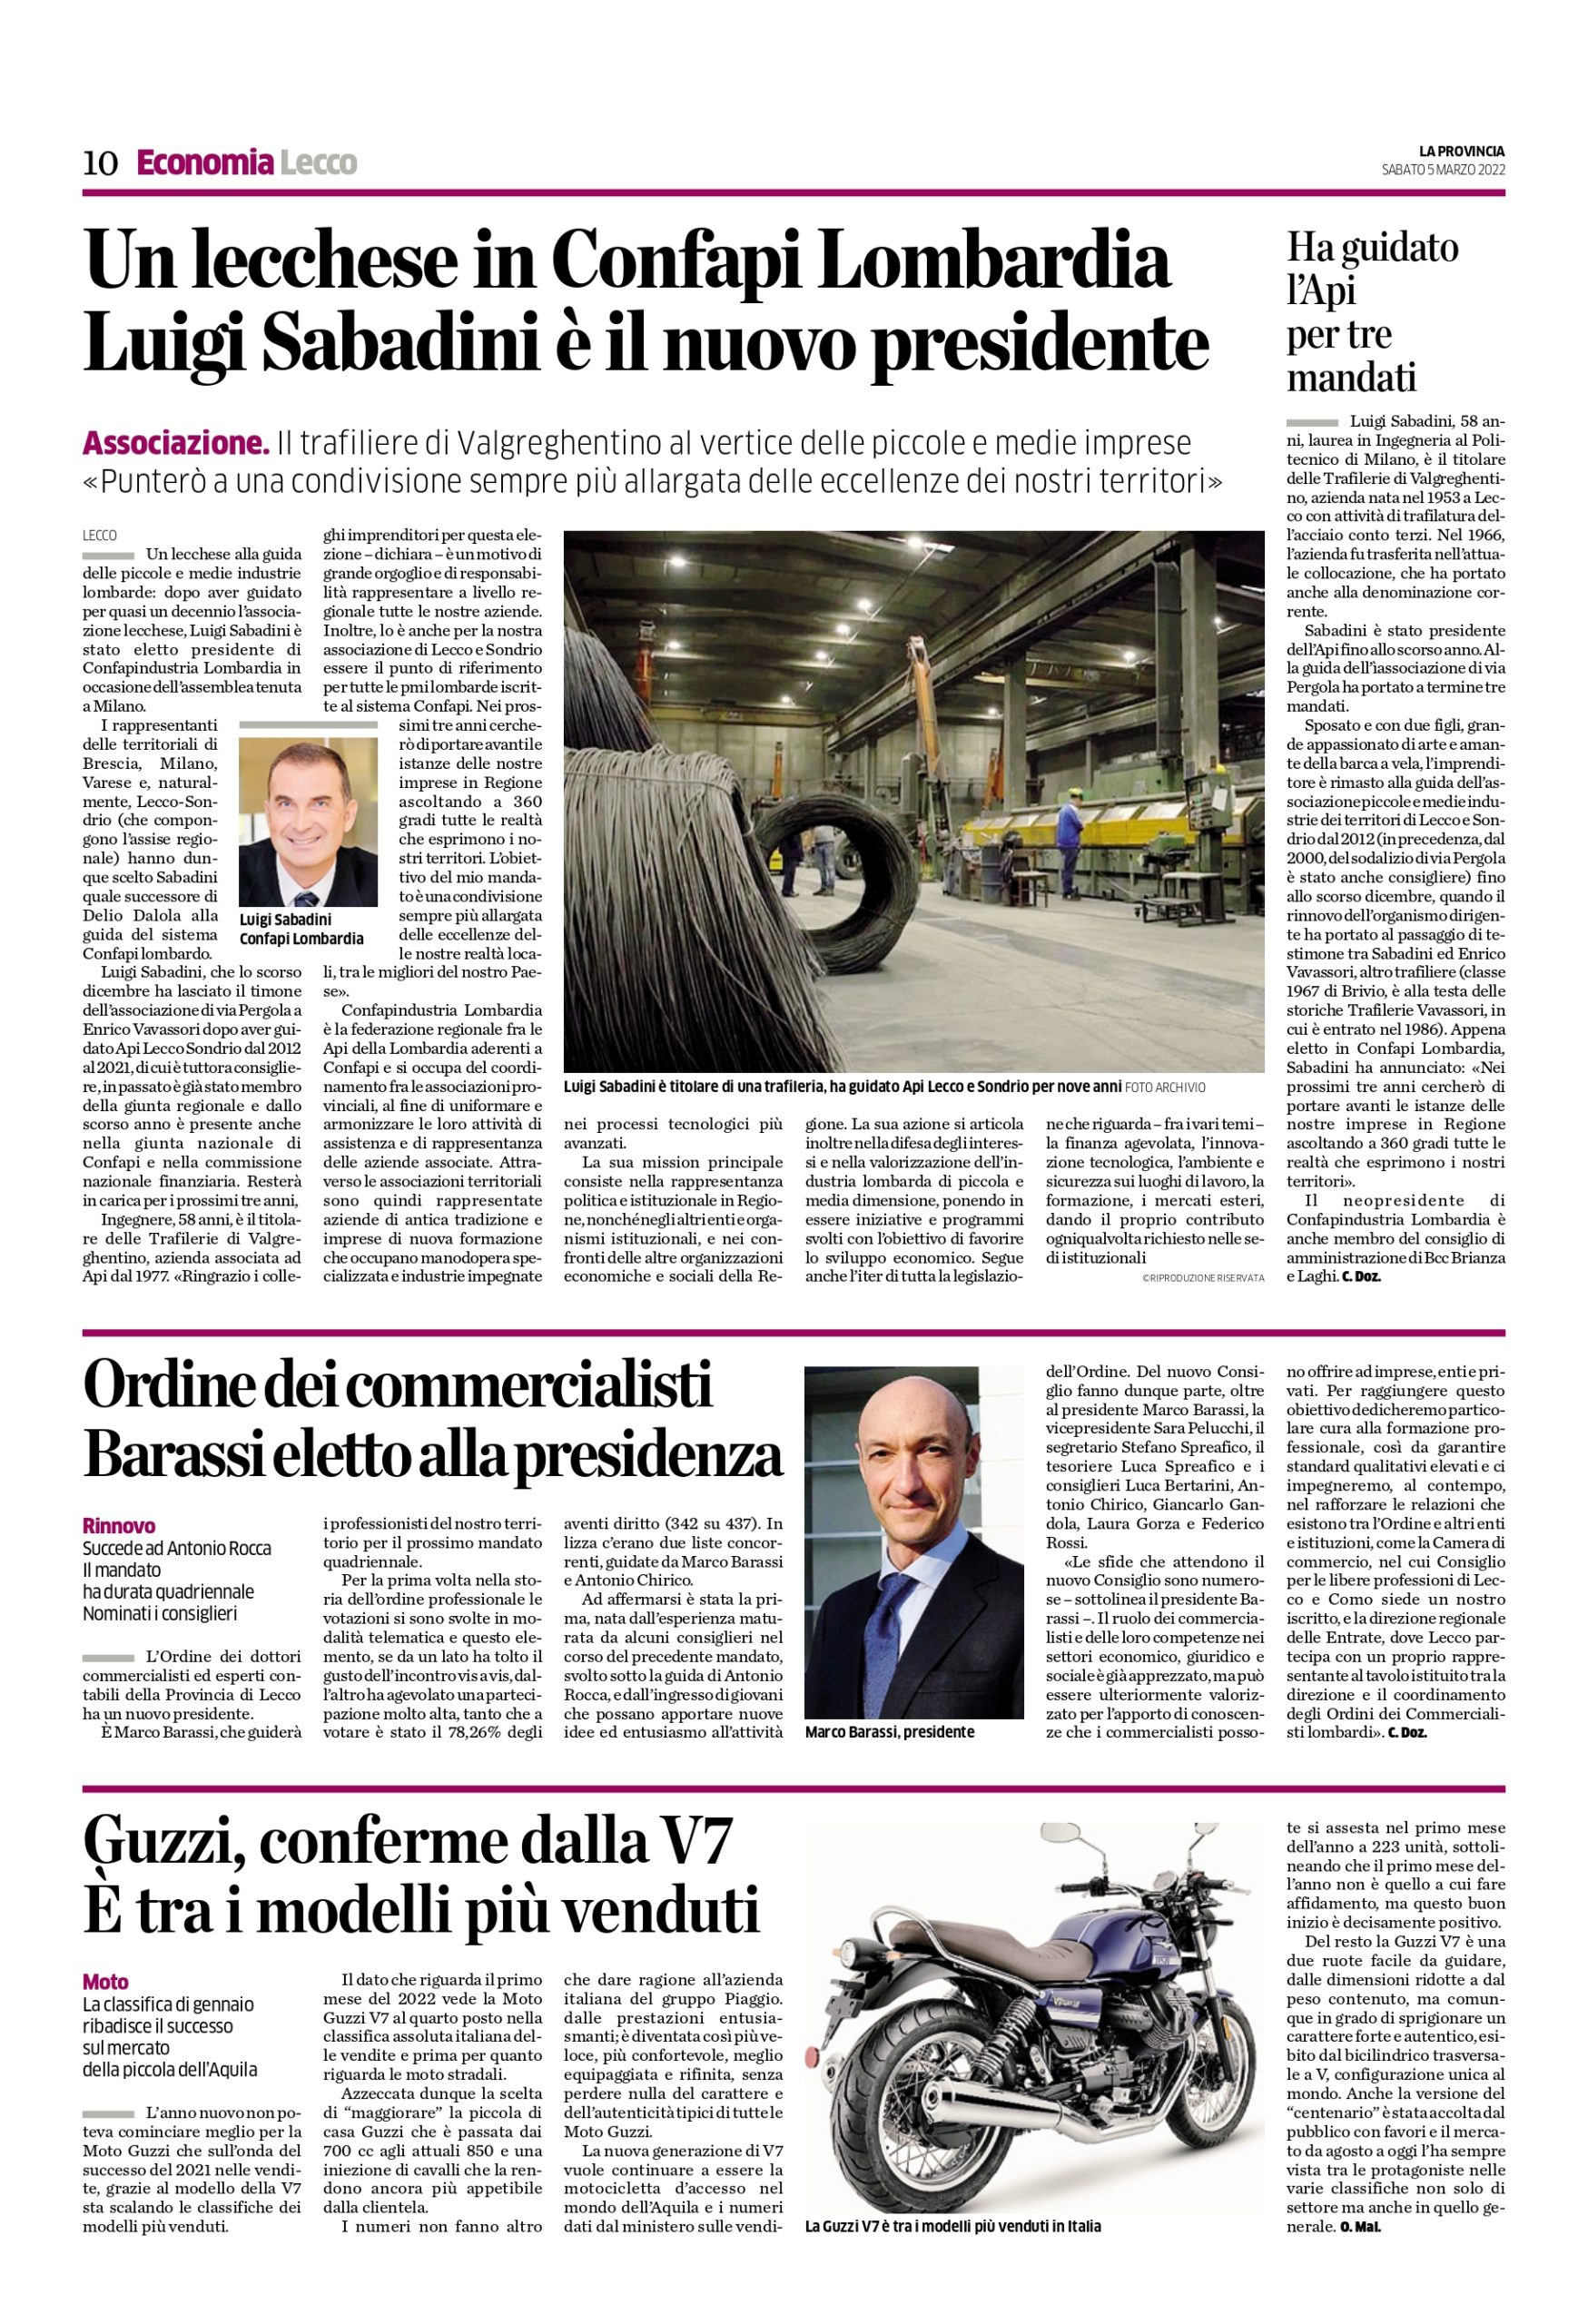 Sabadini eletto presidente Confapindustria Lombardia: rassegna stampa